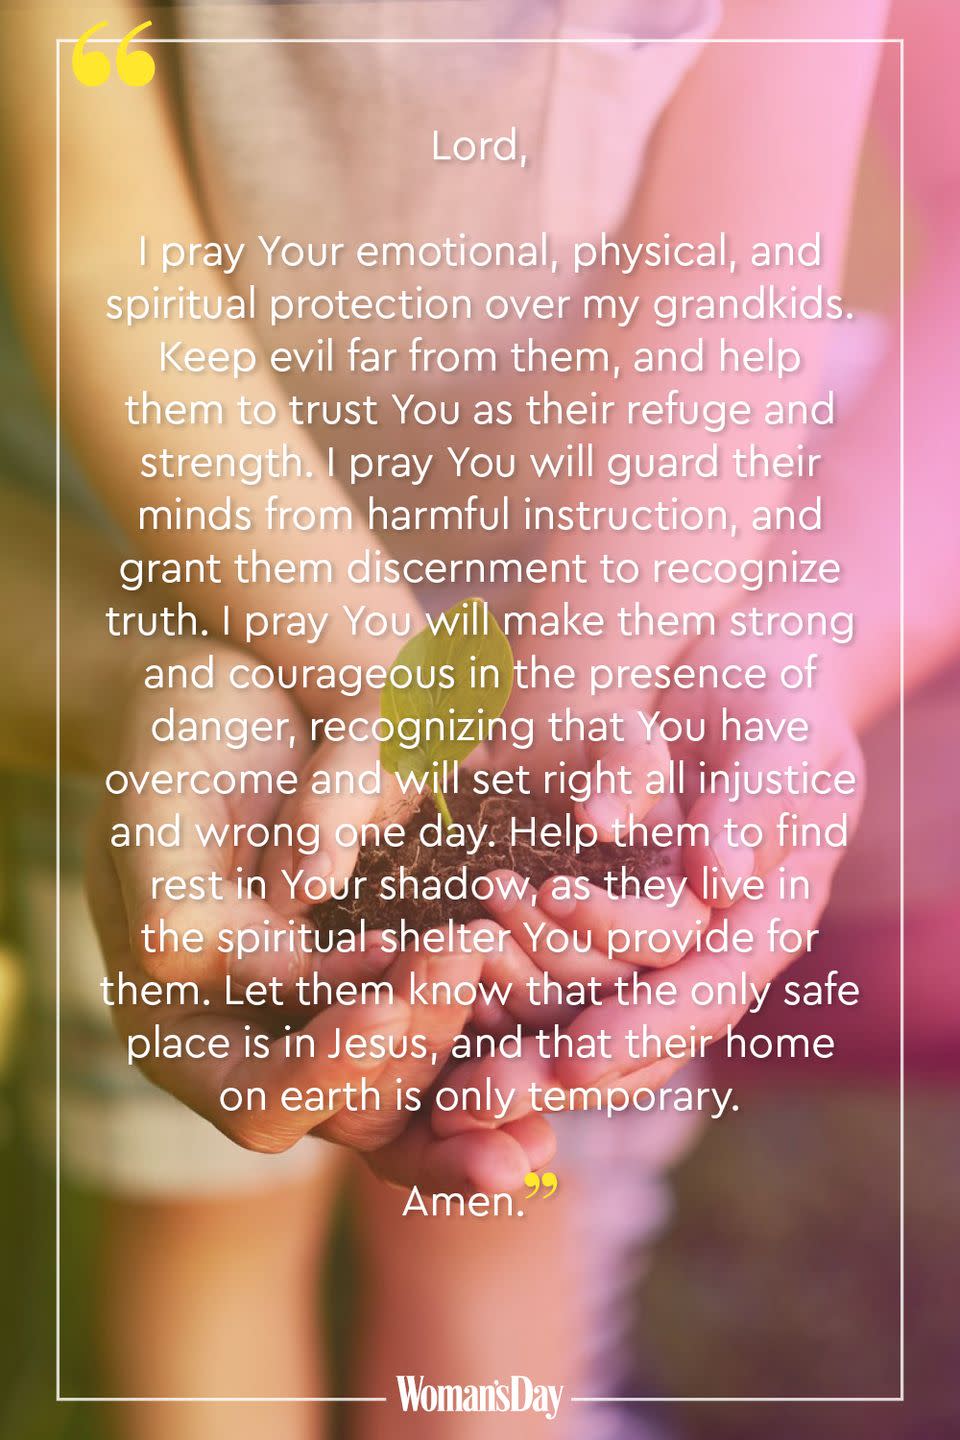 For Protection of Grandchildren